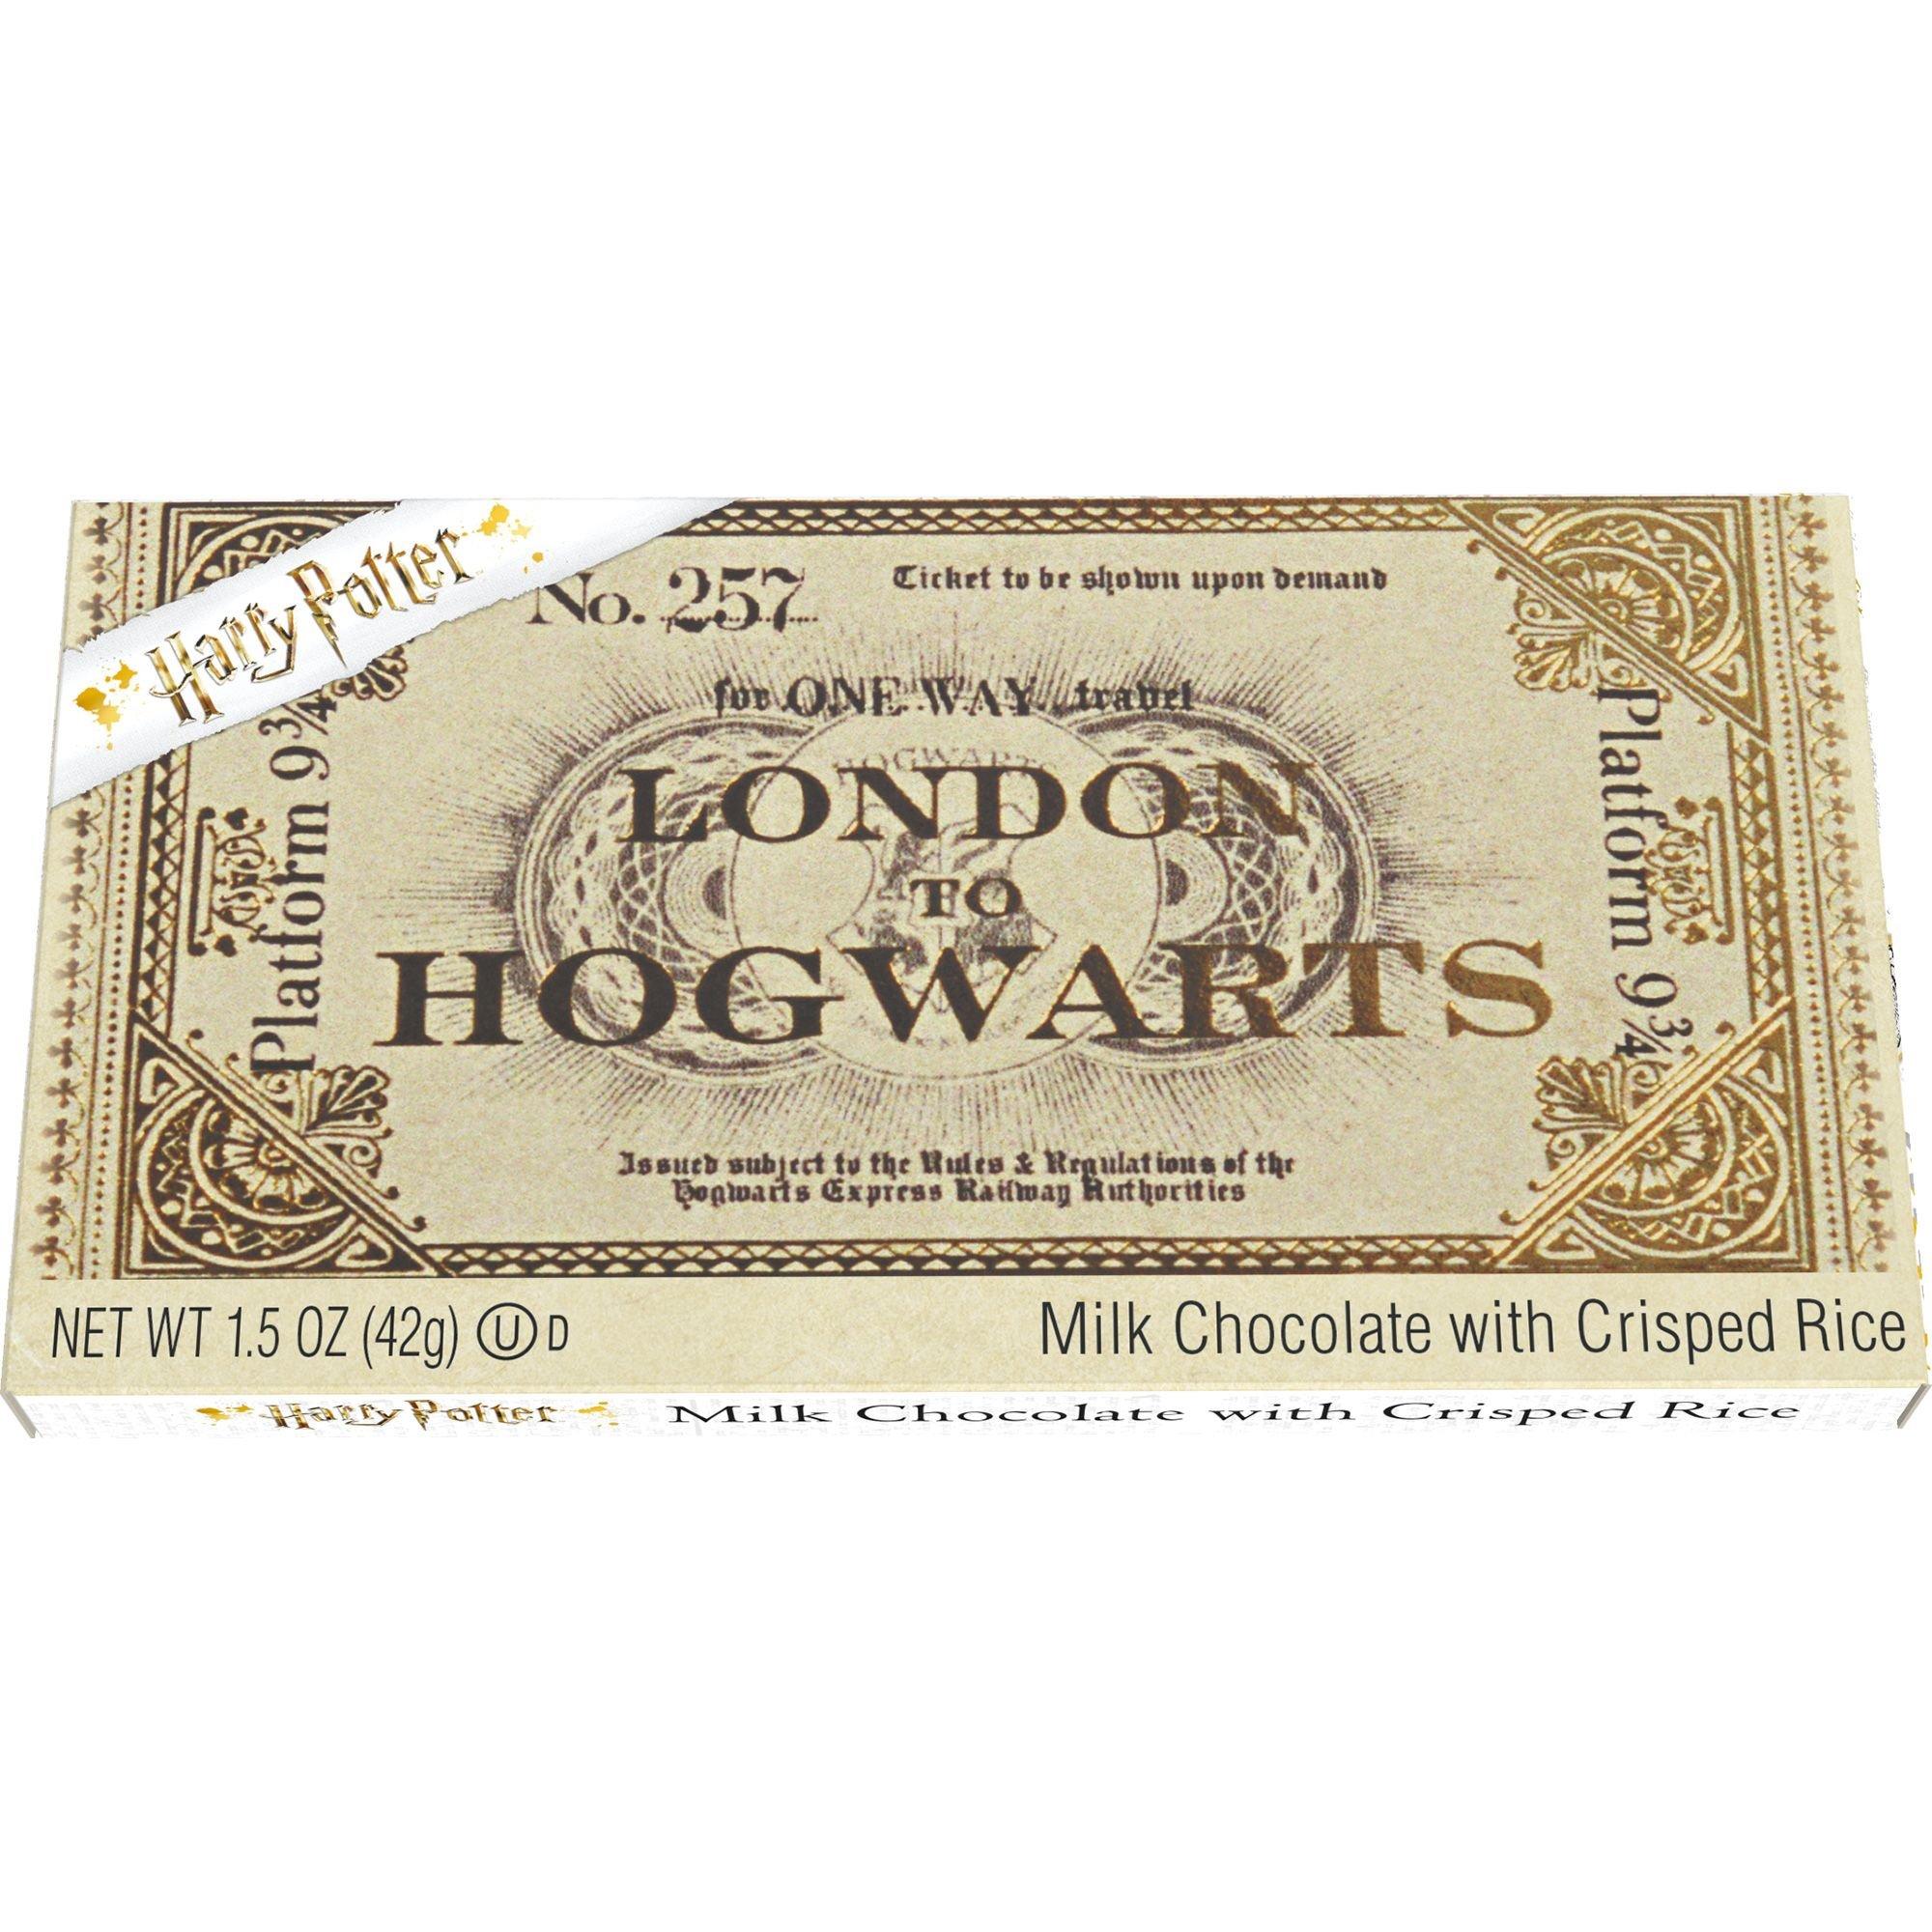 Harry Potter Hogwarts Platform 9 3/4 plate